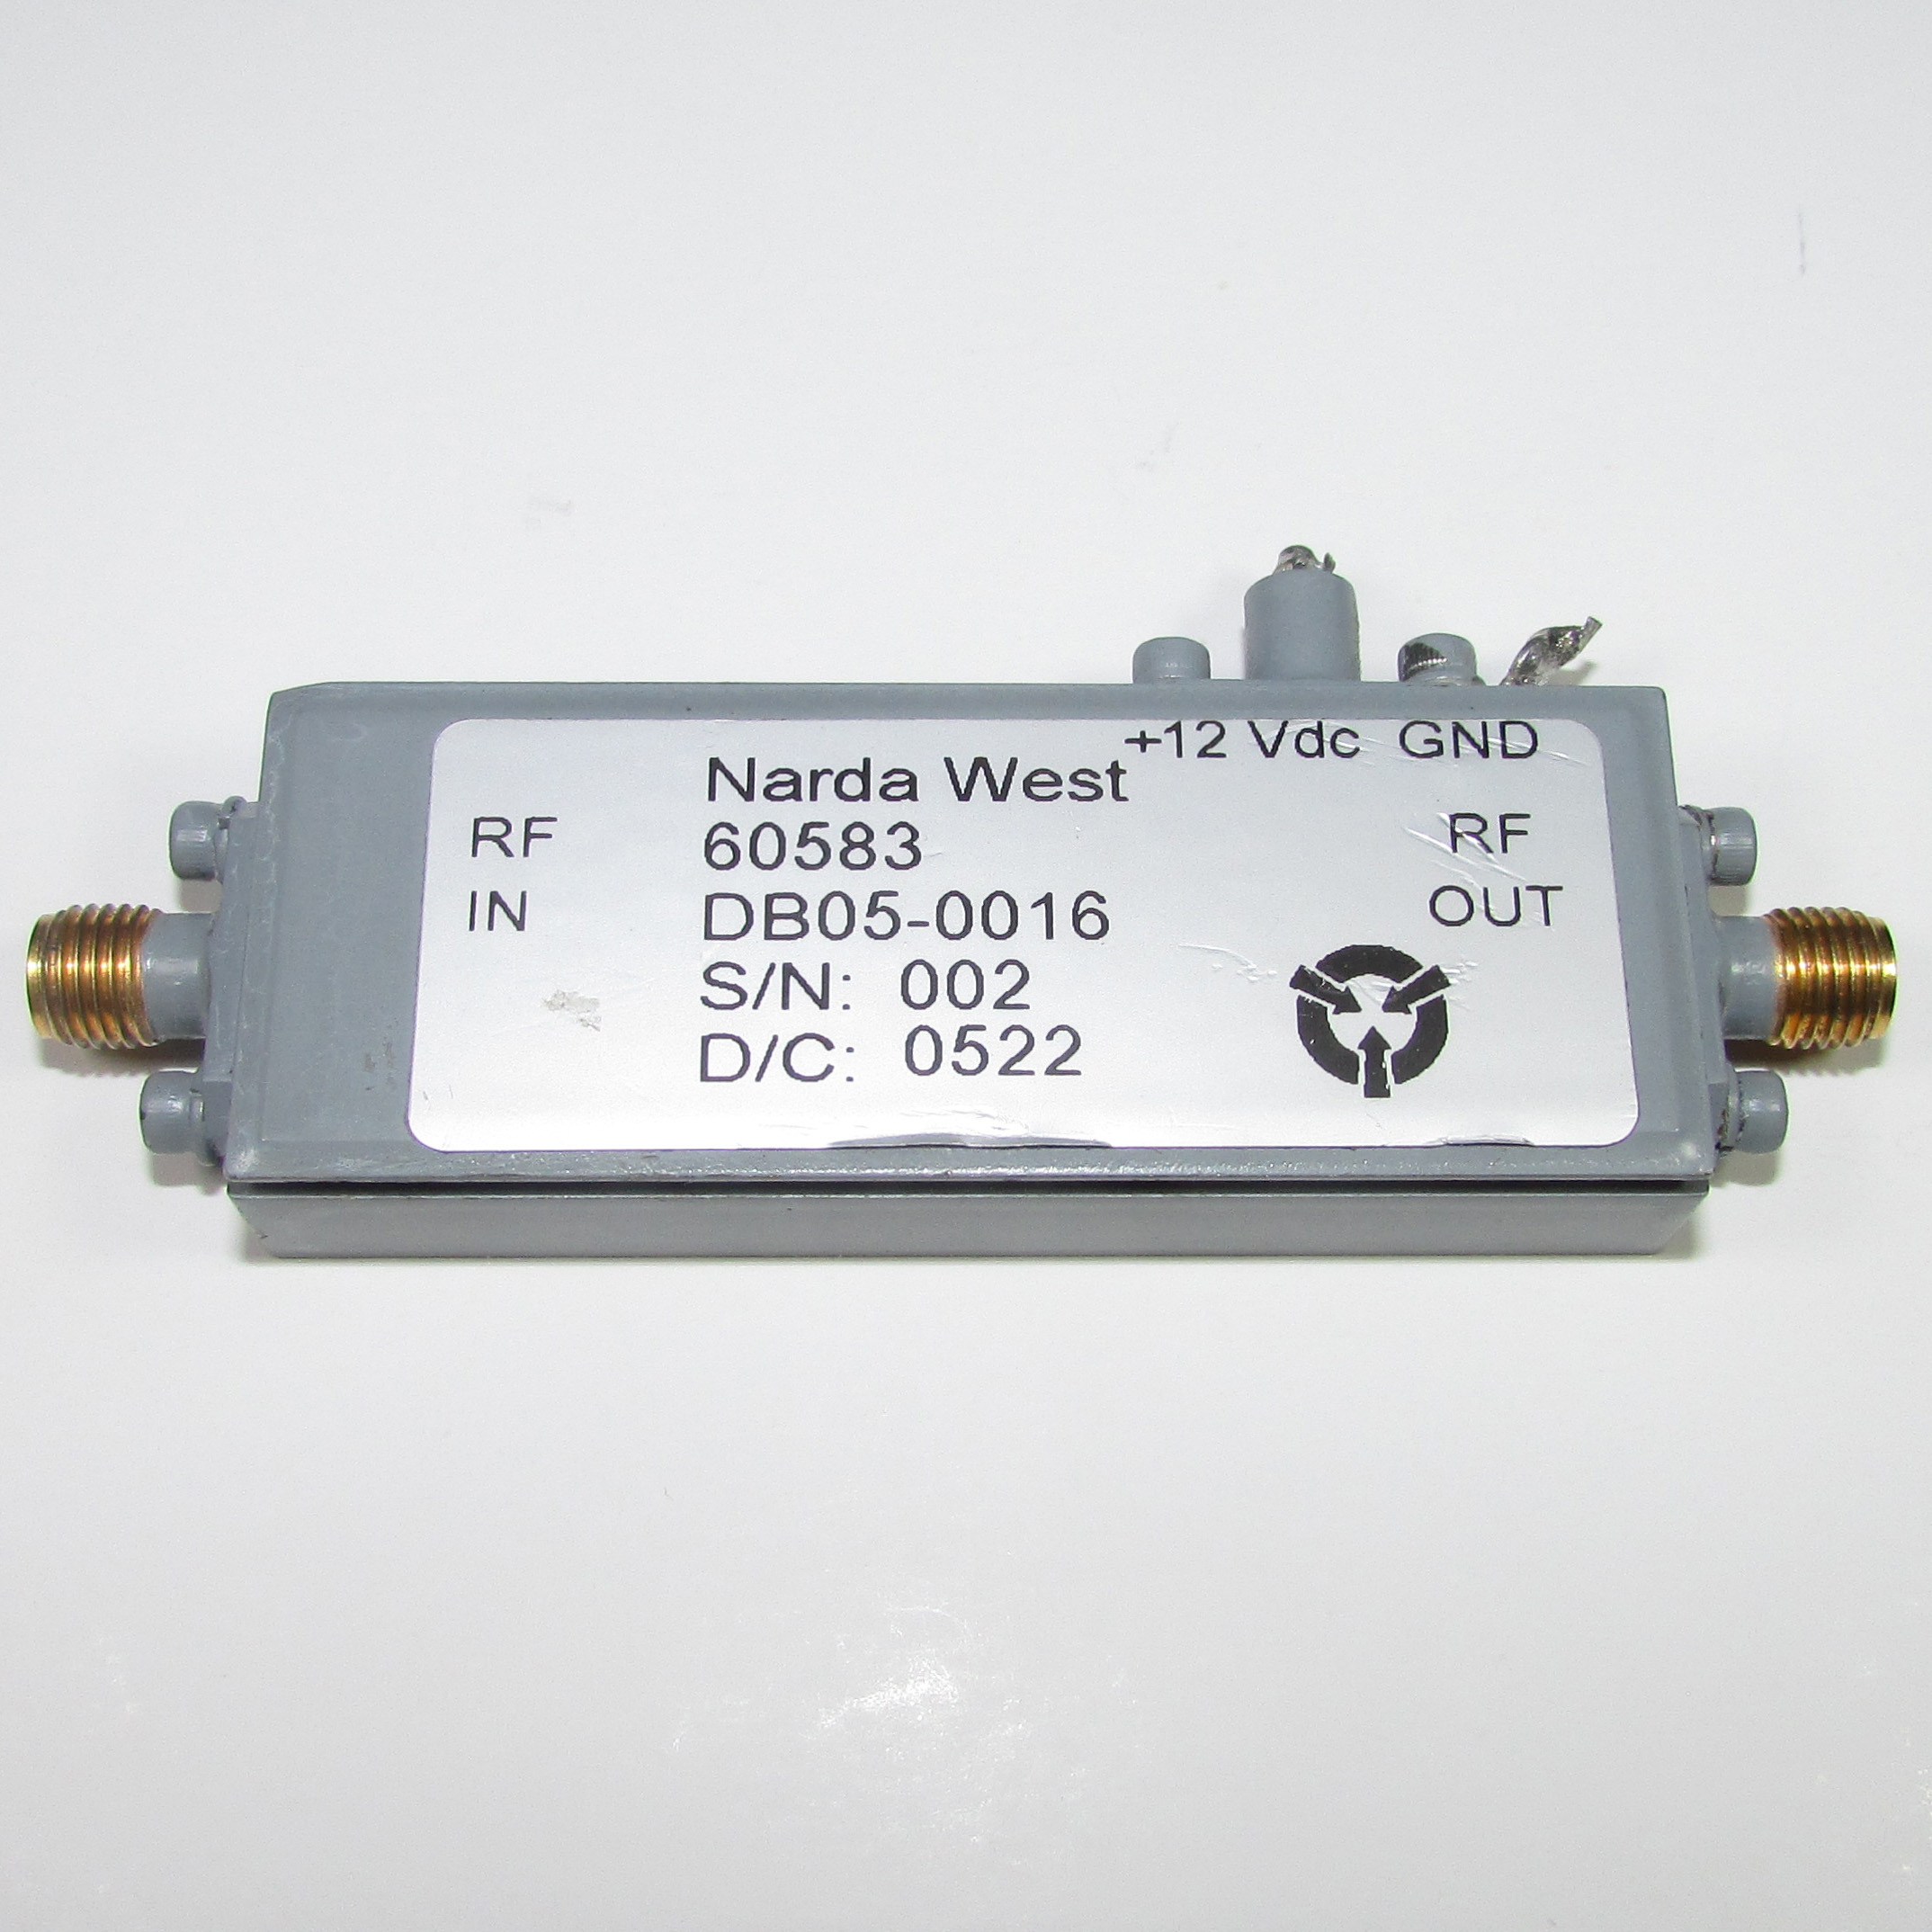 USA Narda West DB05-0016 20-30GHz 45dB 22dBm microwave power amplifier